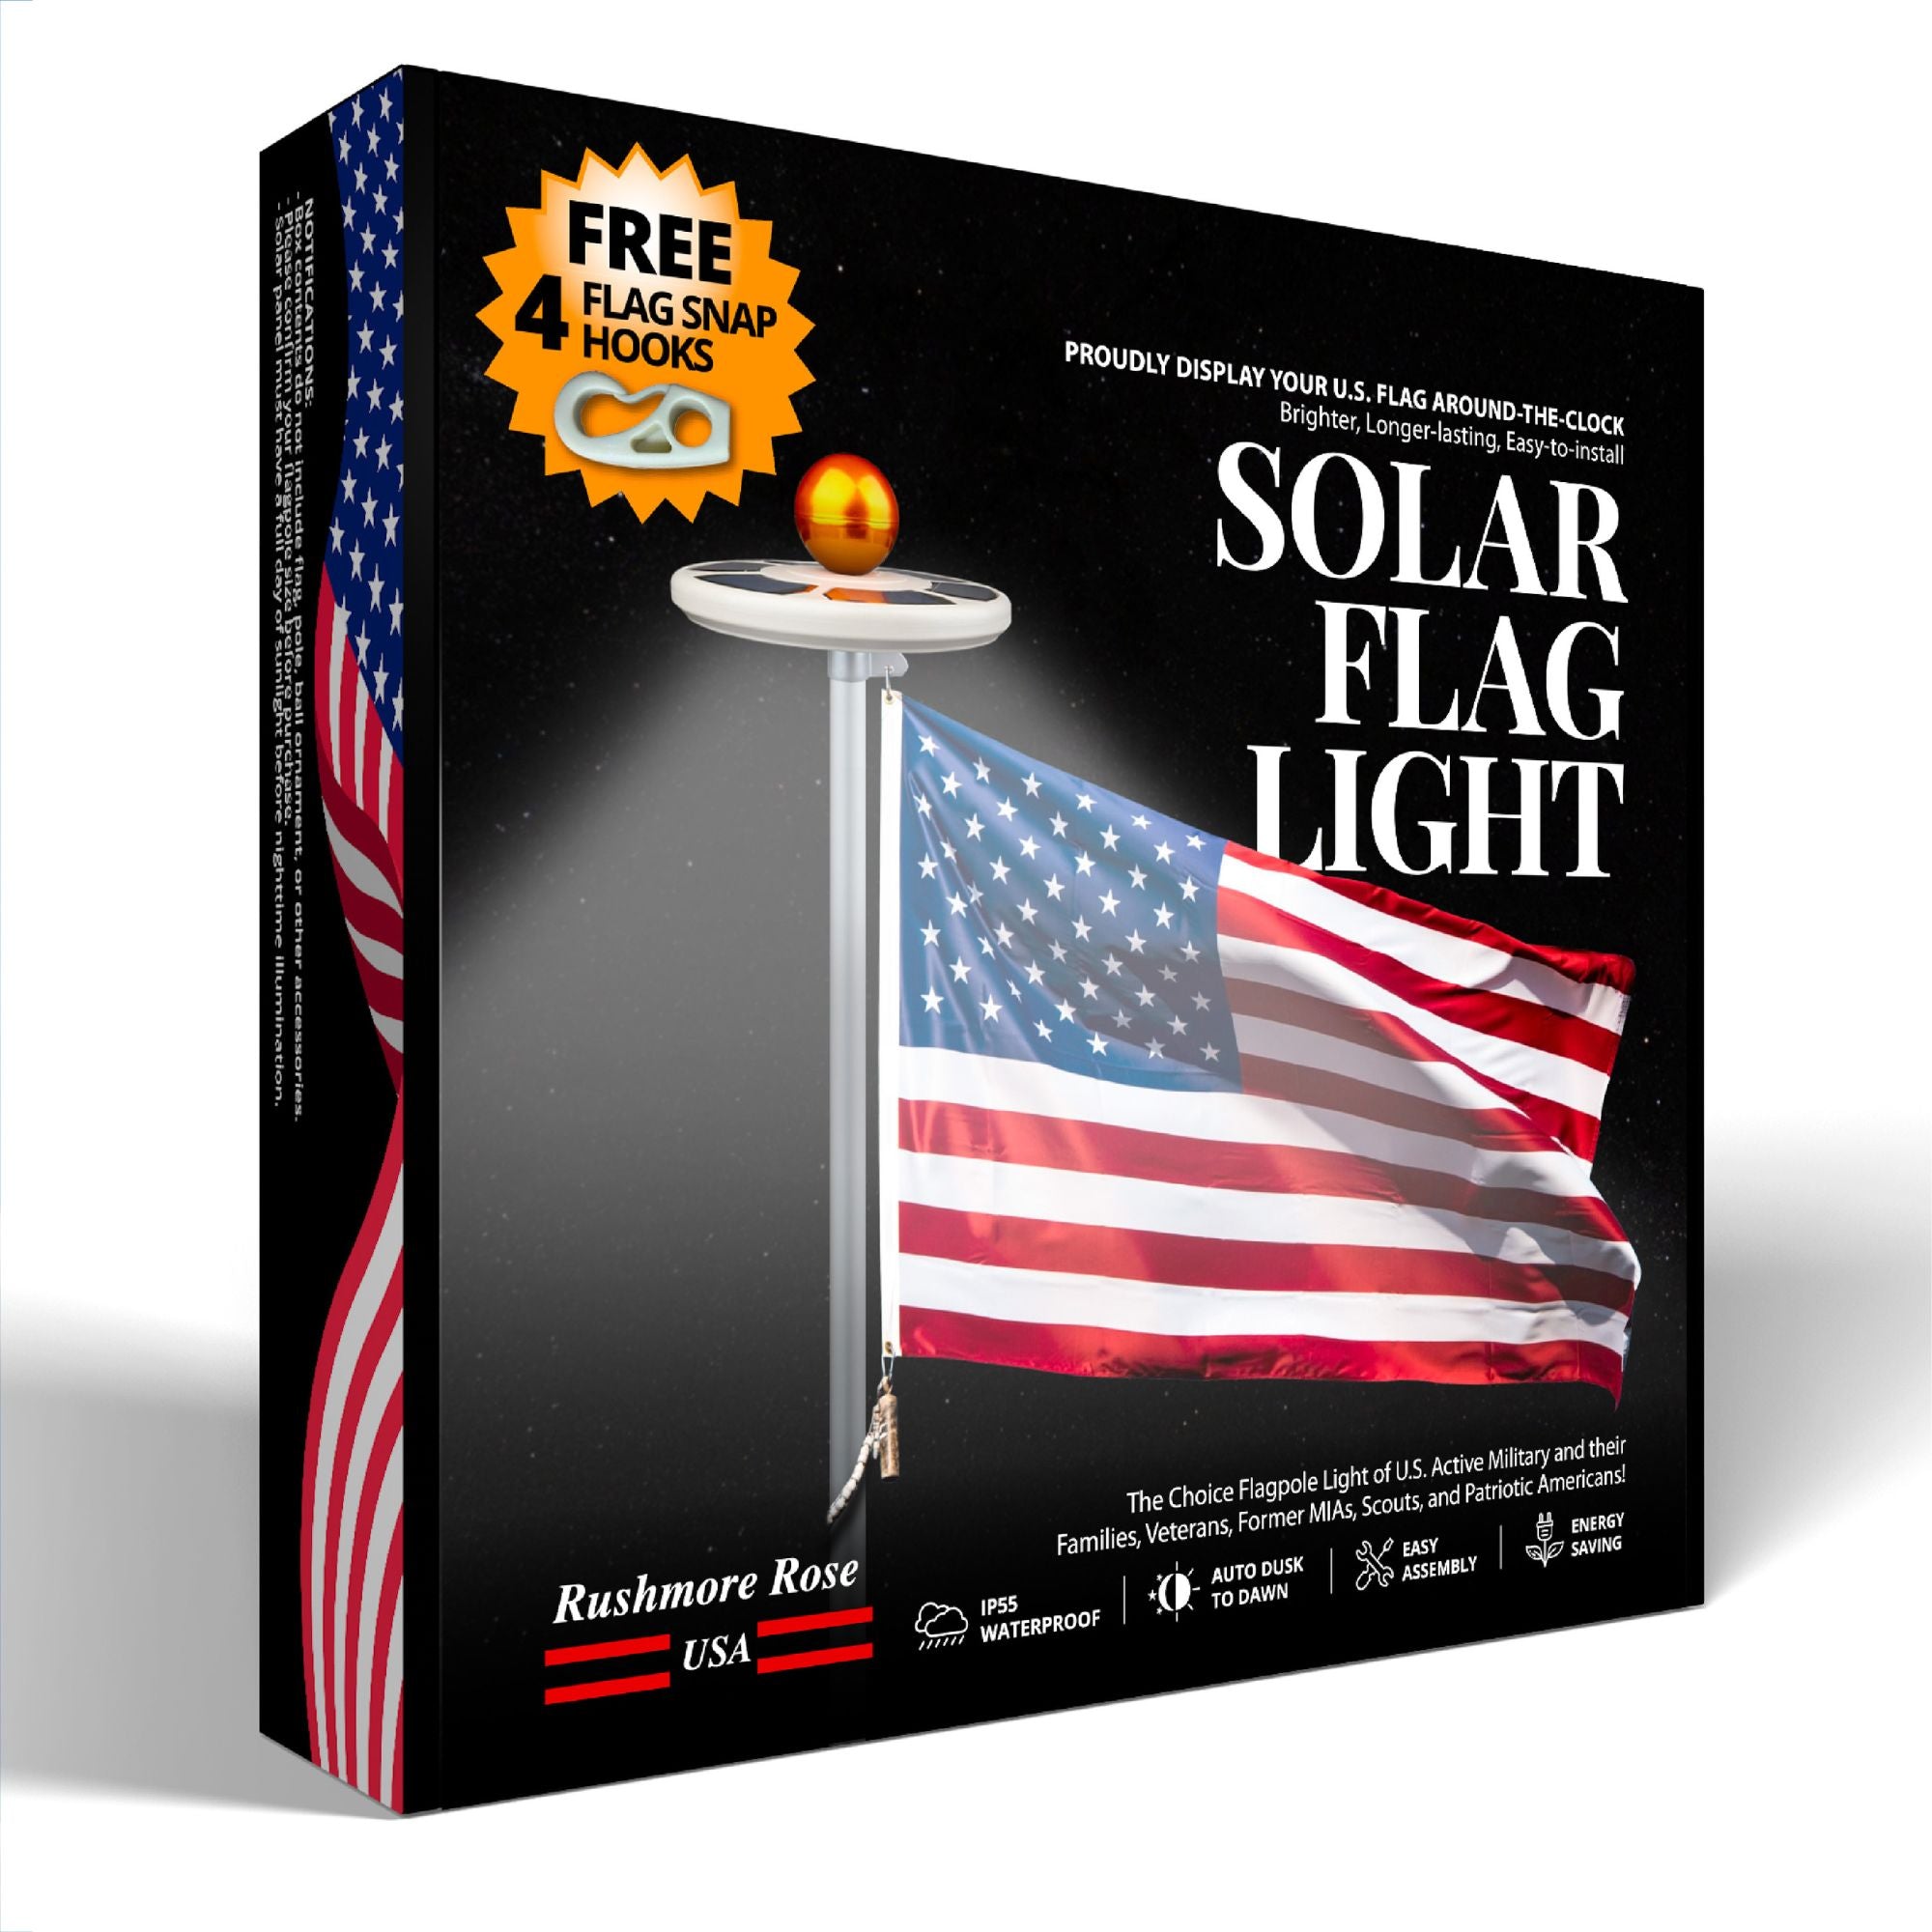 Easy to Install Solar Flag Light